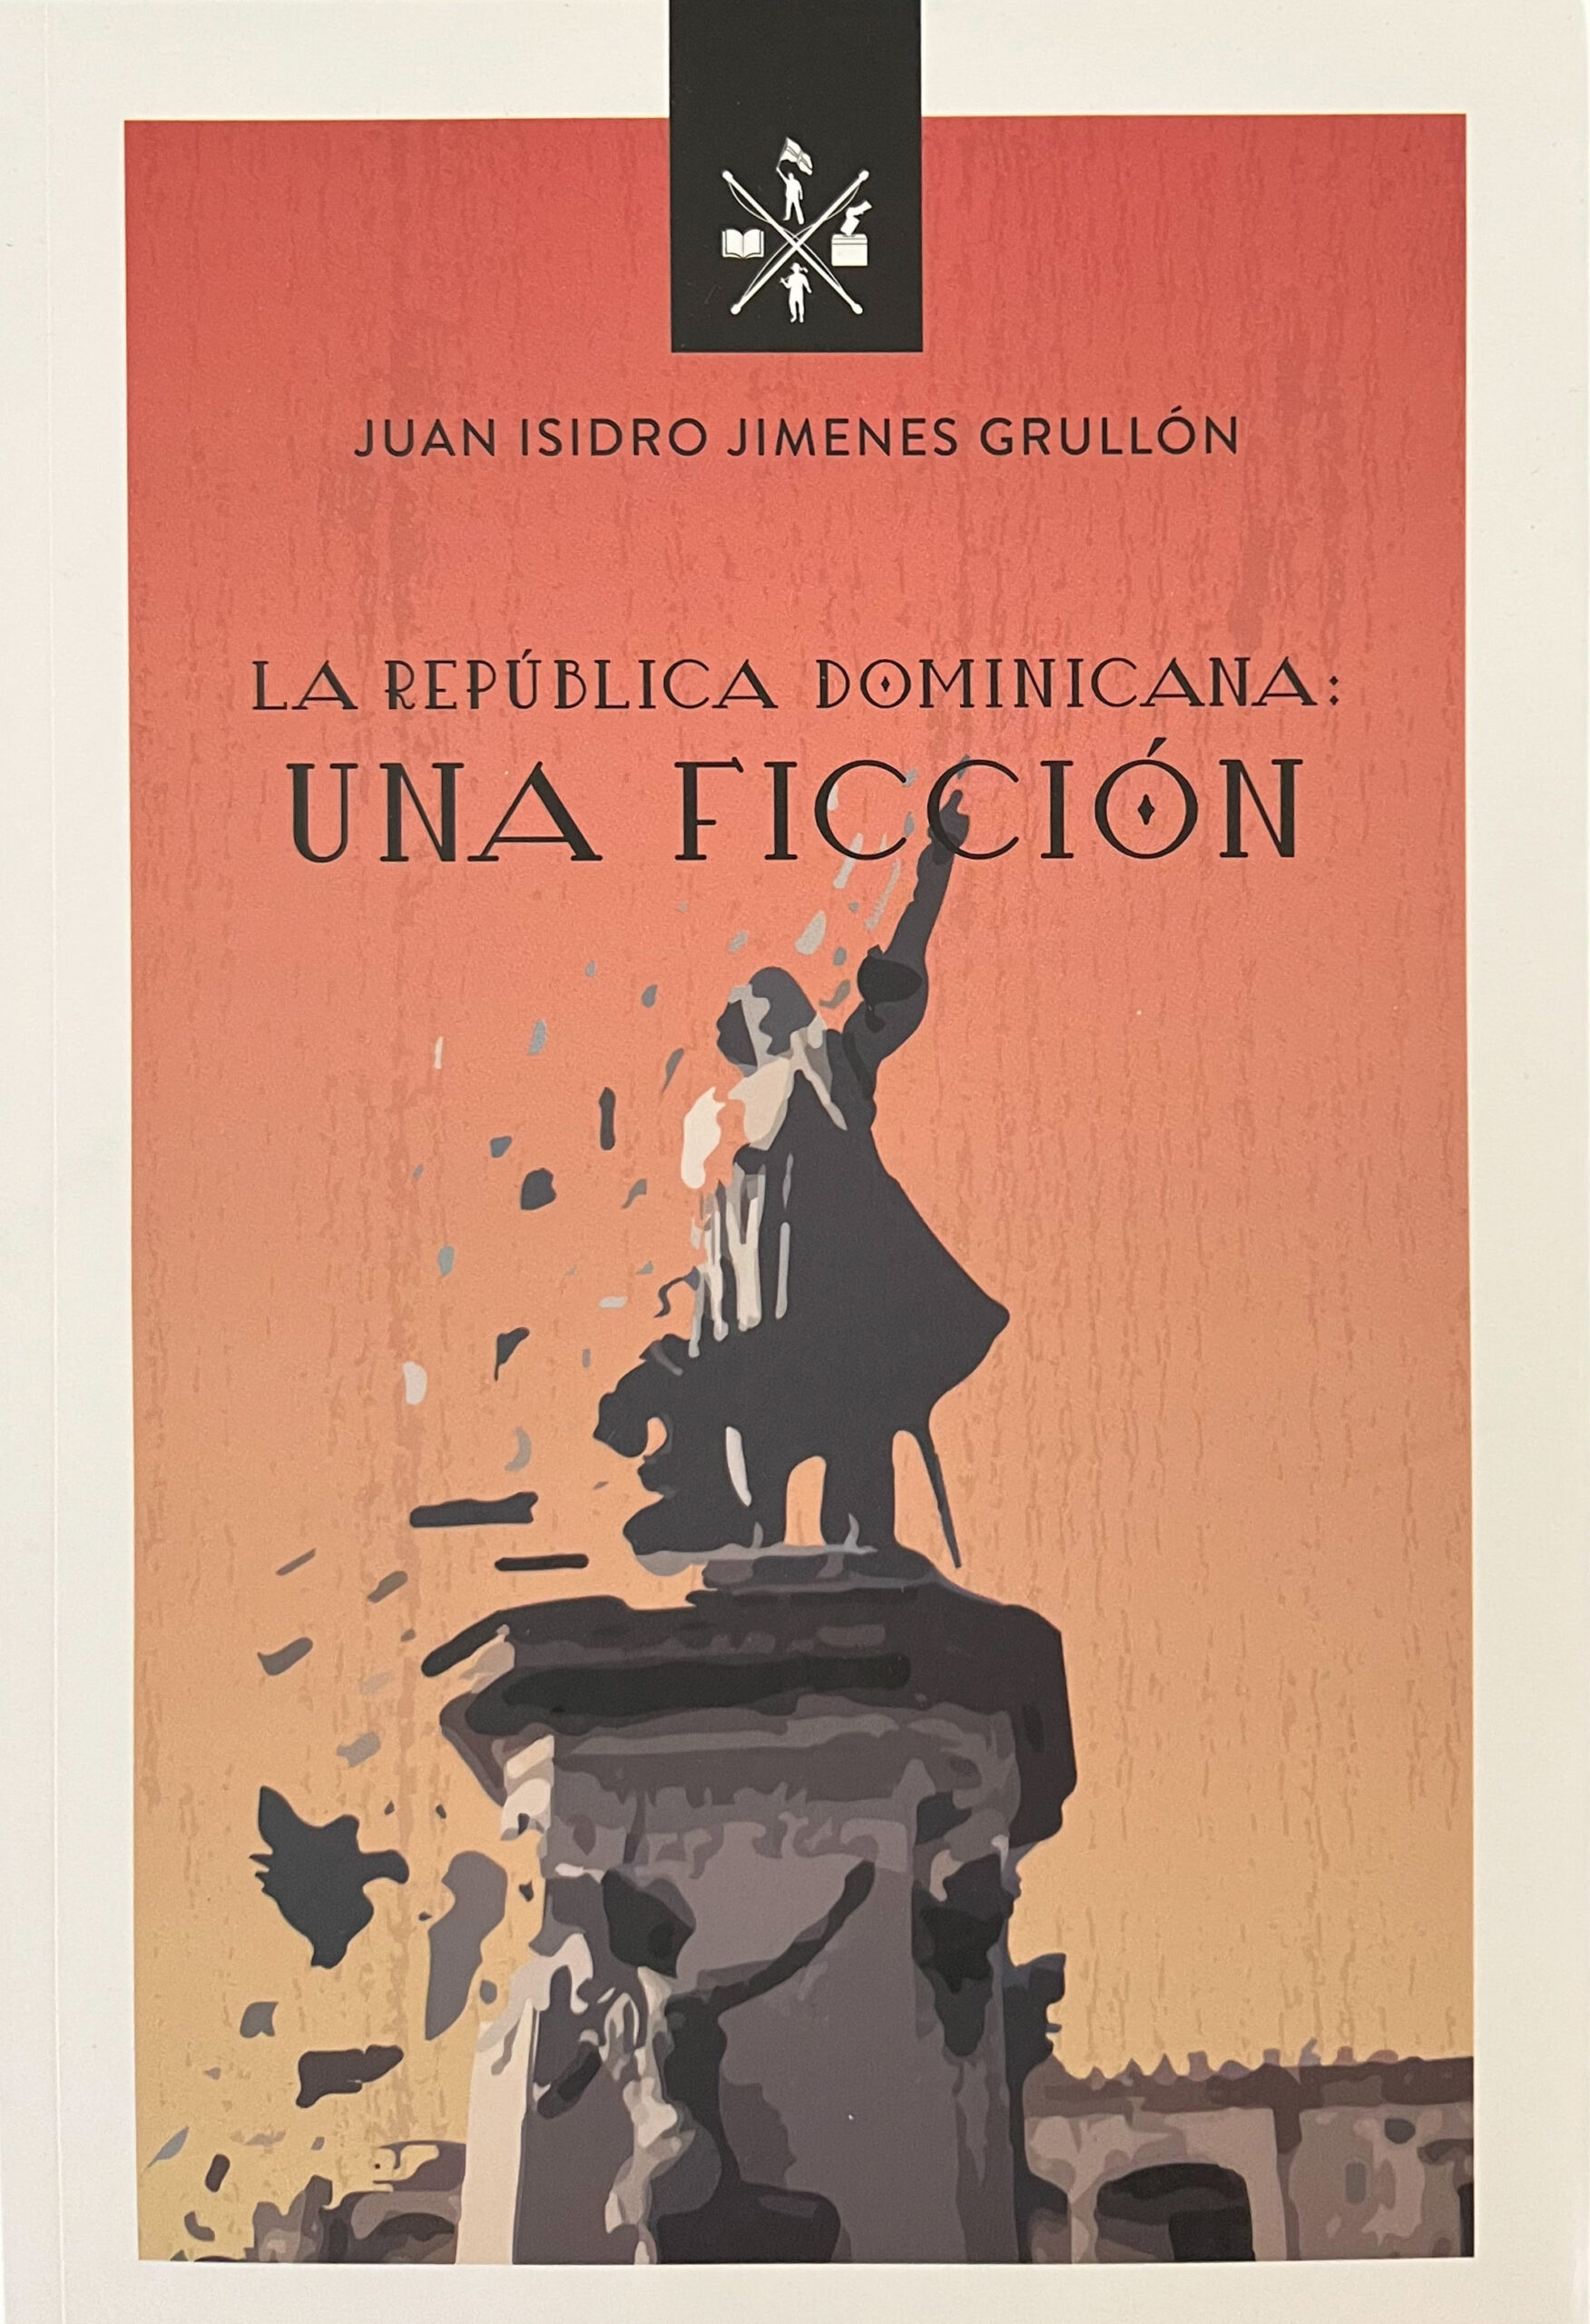 Afluentes de la literatura dominicana en la literatura hispanoamericana